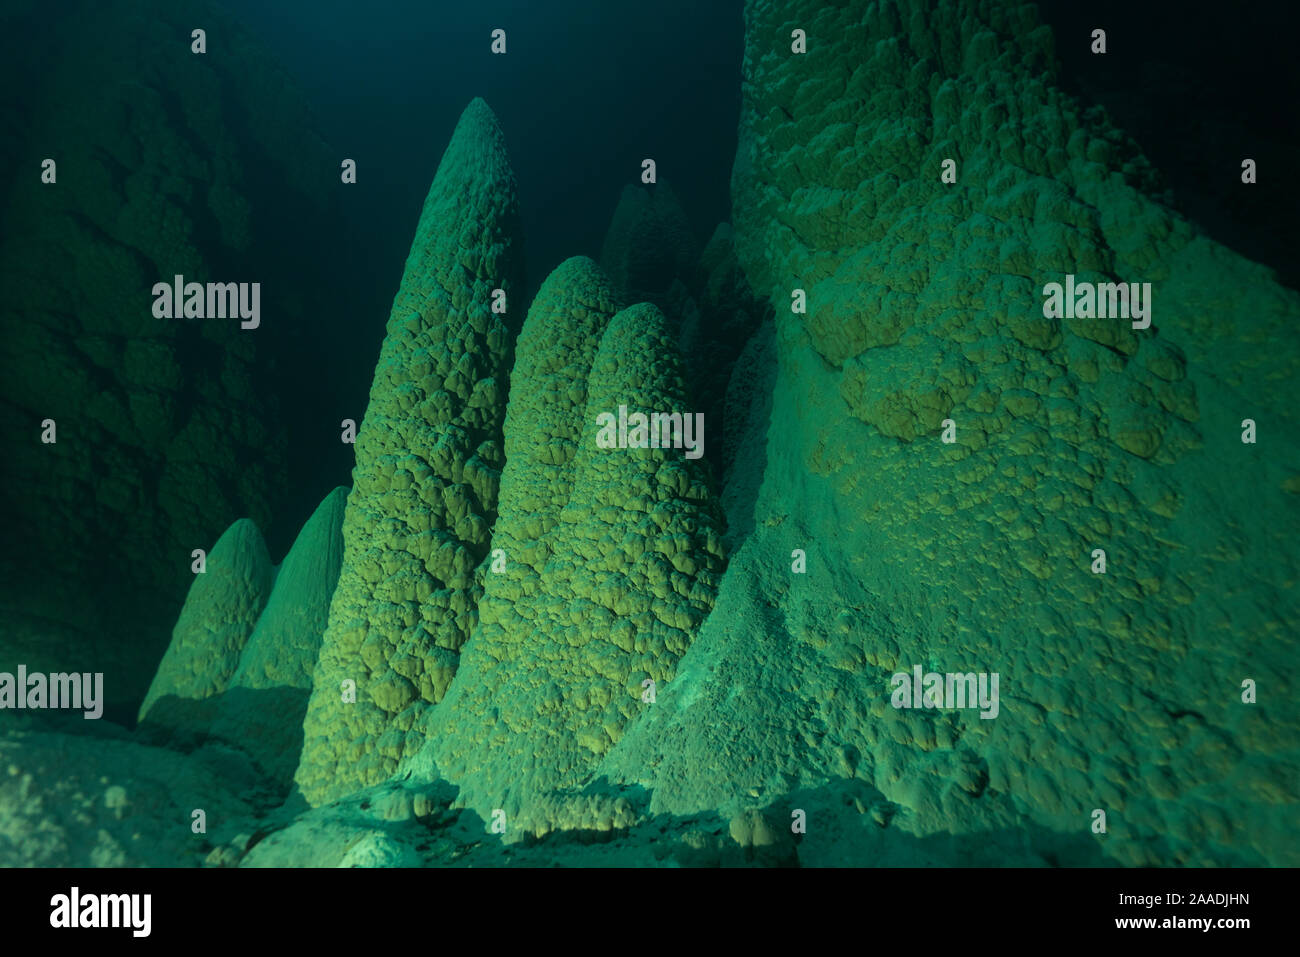 Anhumas Abgrund, einem 72 Meter tiefen Höhle mit Unterwasser Kalkstein Kegel bis zu 20 Meter hohe, Bonito, Serra da Bodoquena Bodoquena (Gebirge), Mato Grosso del Sul, Brasilien November 2016. Für die Süßwasser-Projekt fotografiert. Stockfoto